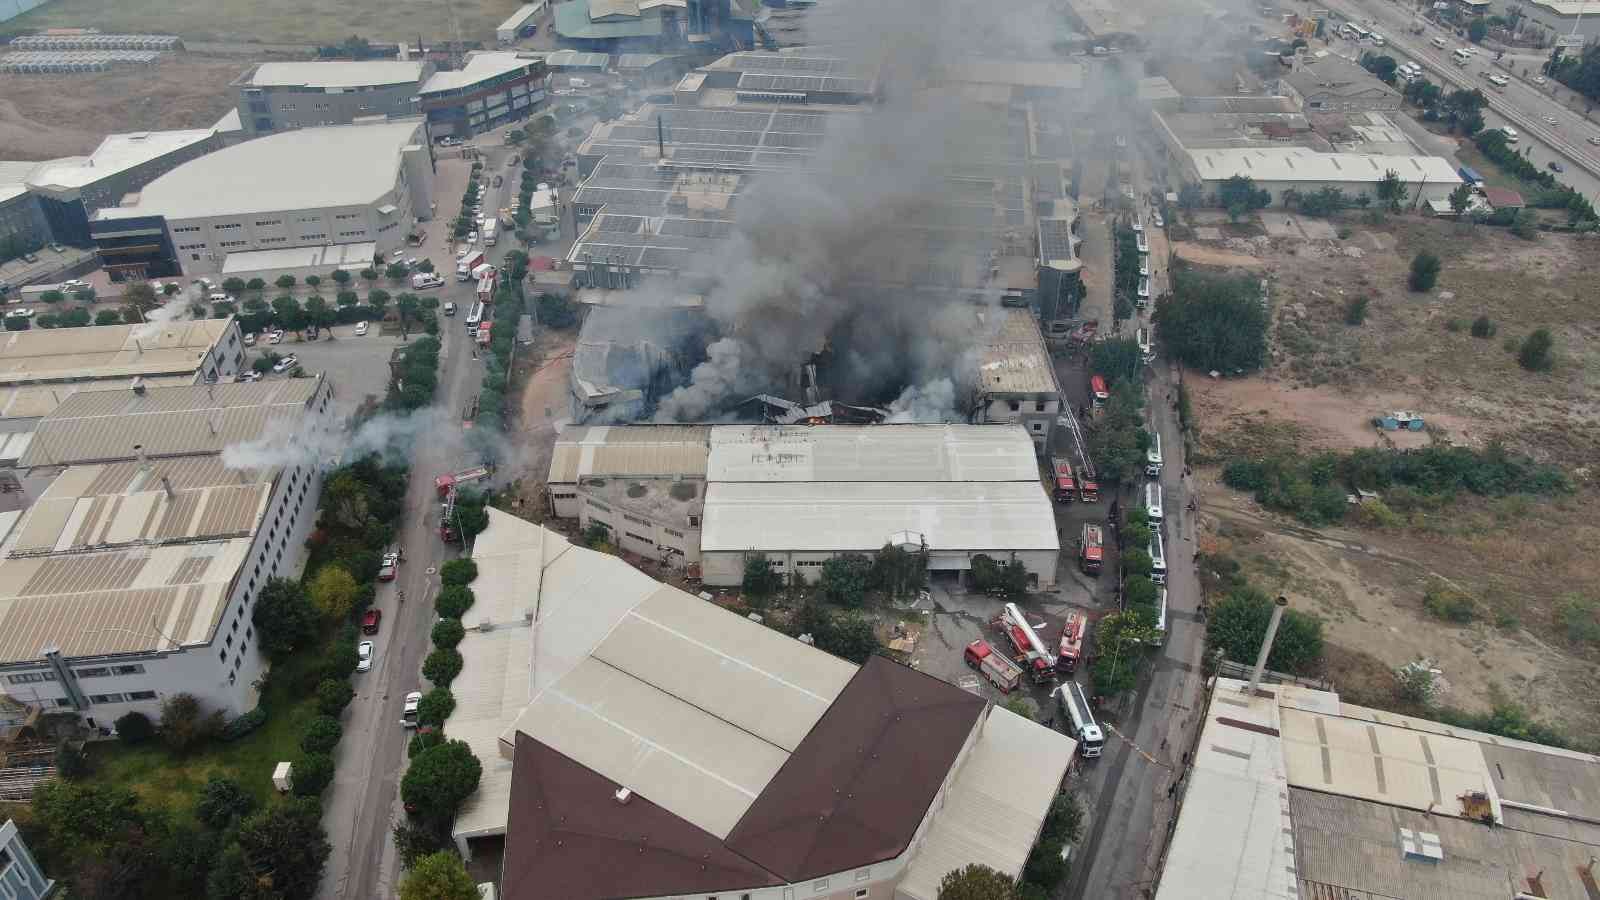 Bursa’da tekstil fabrikasındaki büyük yangın 3 saatin sonunda kontrol altına alındı #bursa